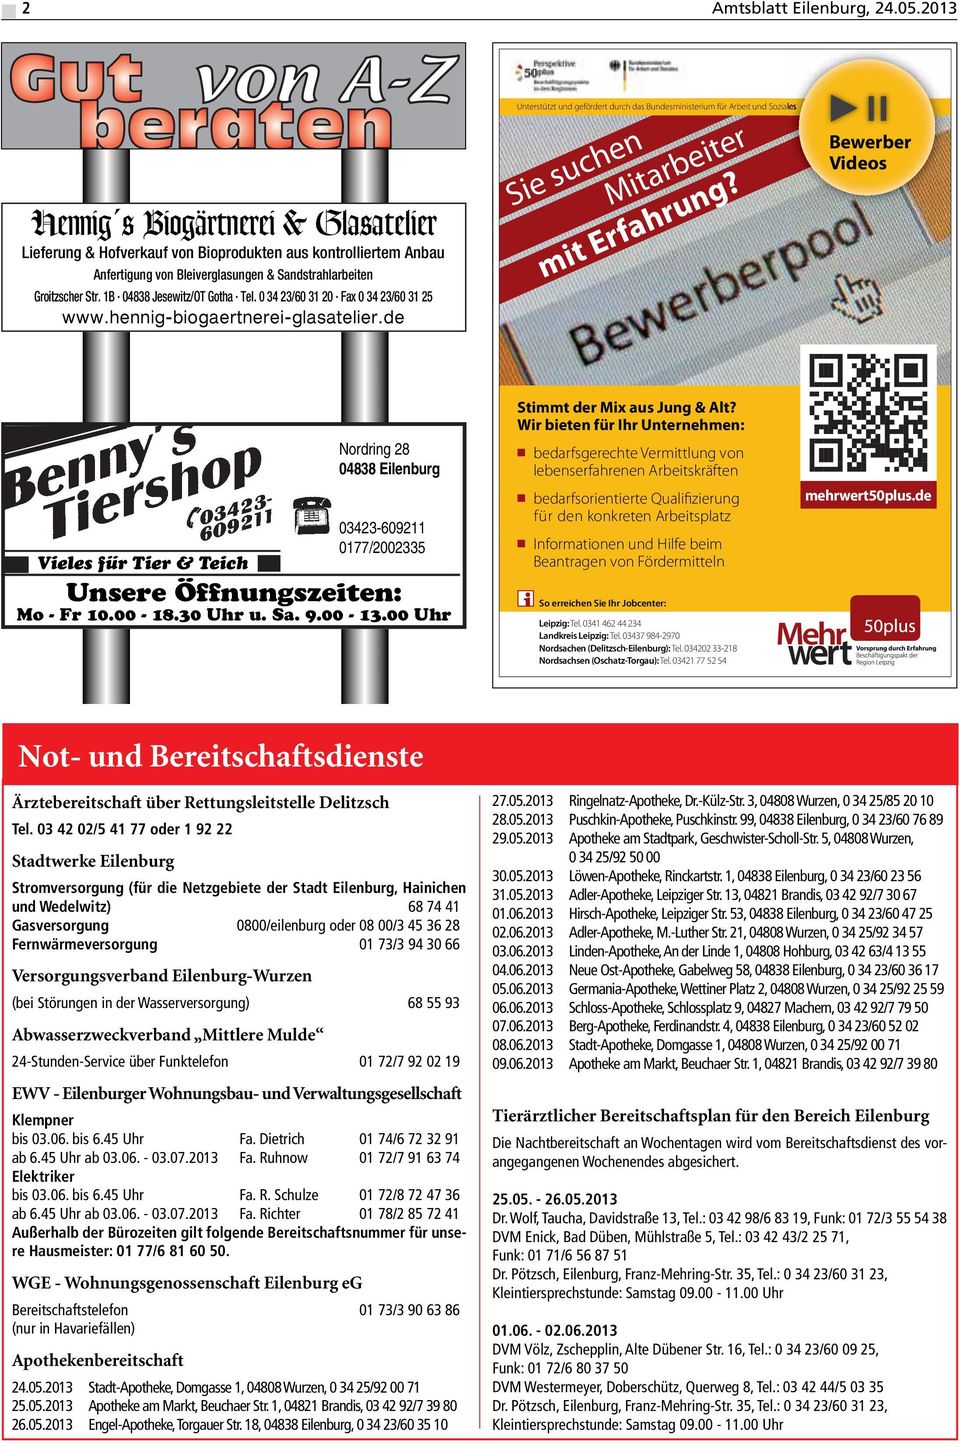 1B 04838 Jesewitz/OT Gotha Tel. 0 34 23/60 31 20 Fax 0 34 23/60 31 25 www.hennig-biogaertnerei-glasatelier.